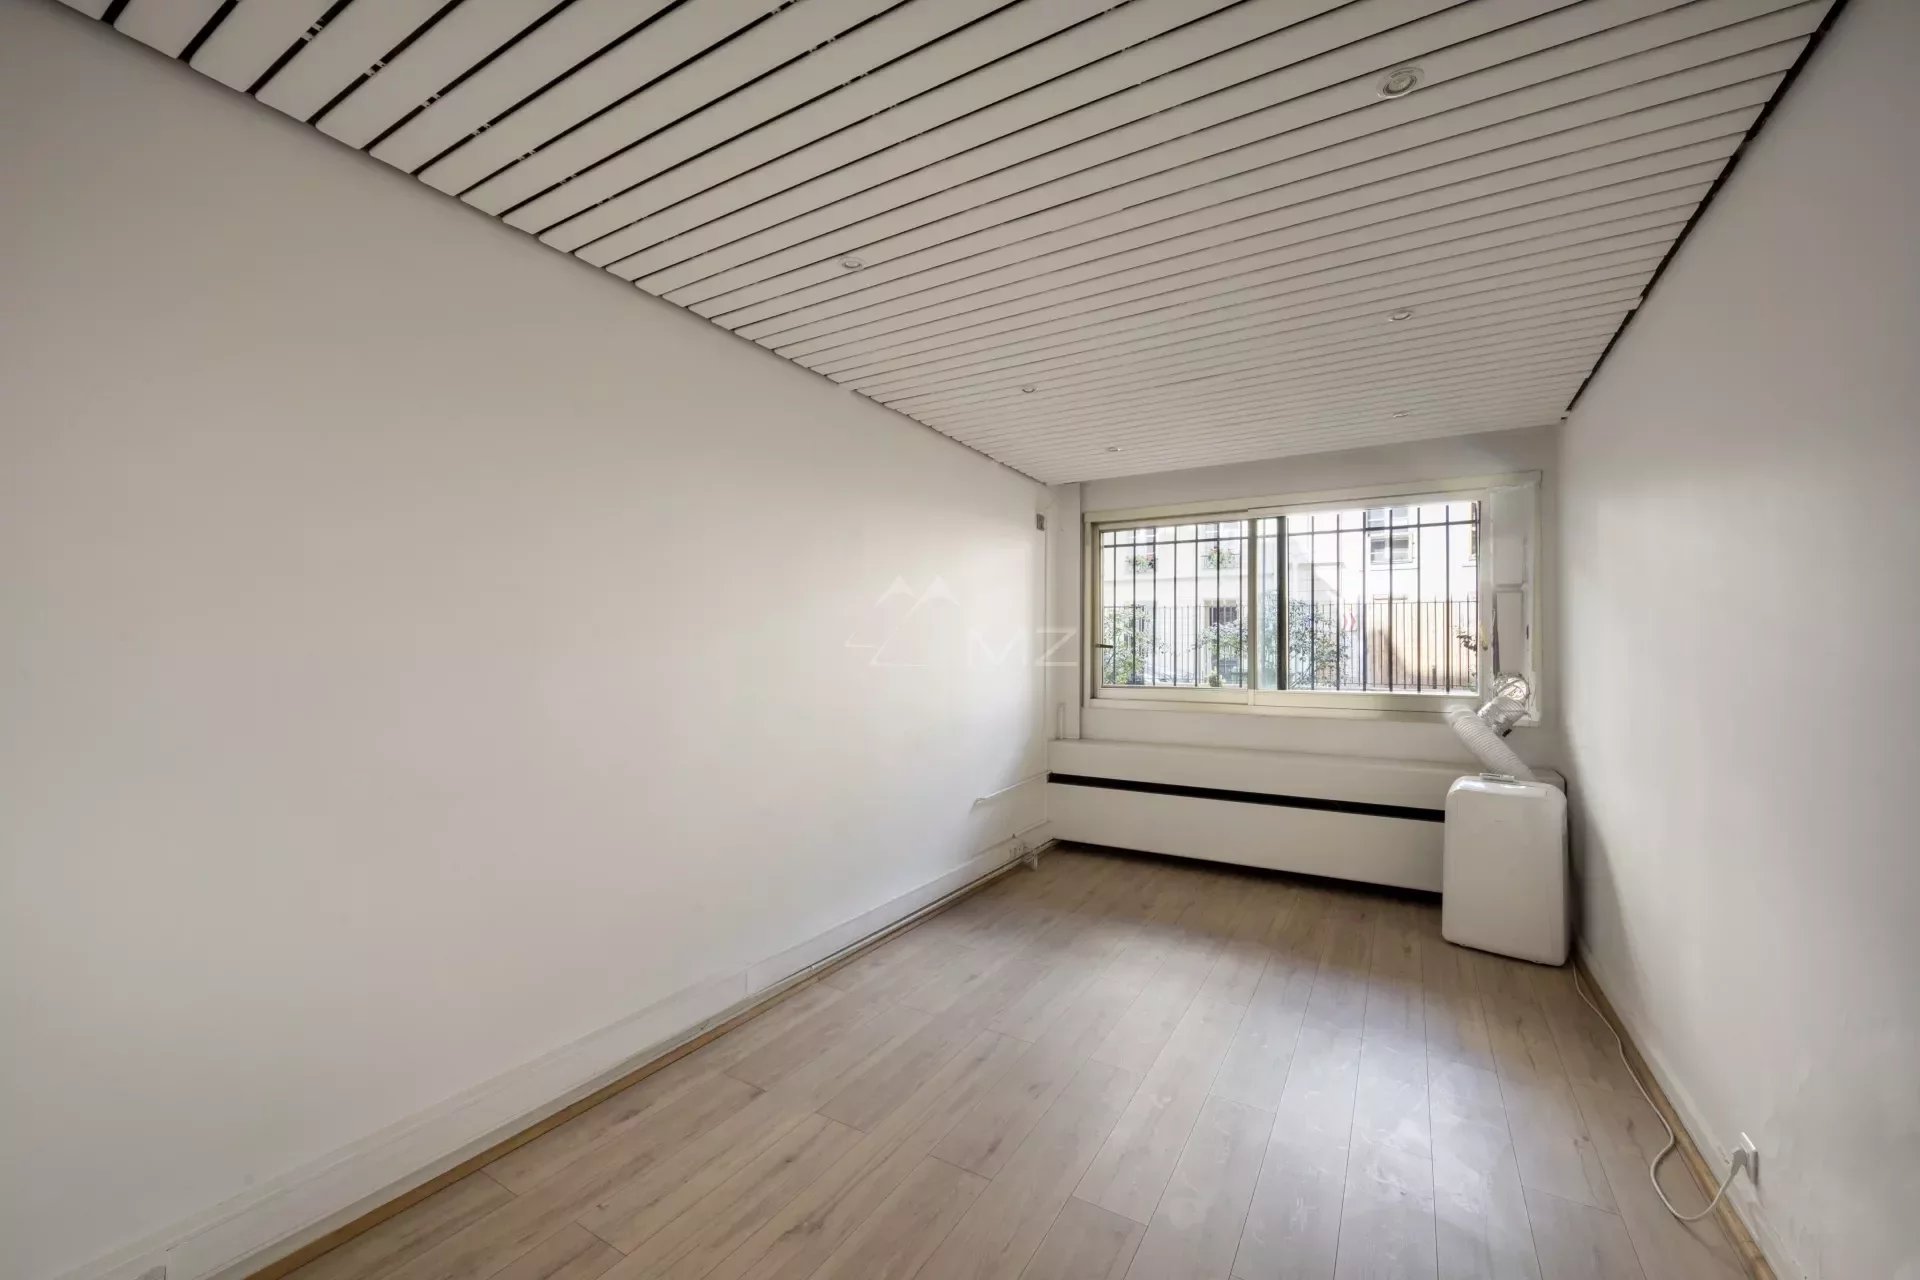 For Sale Apartment - Commercial space - 75007 - Paris - Boulevard Saint Germain